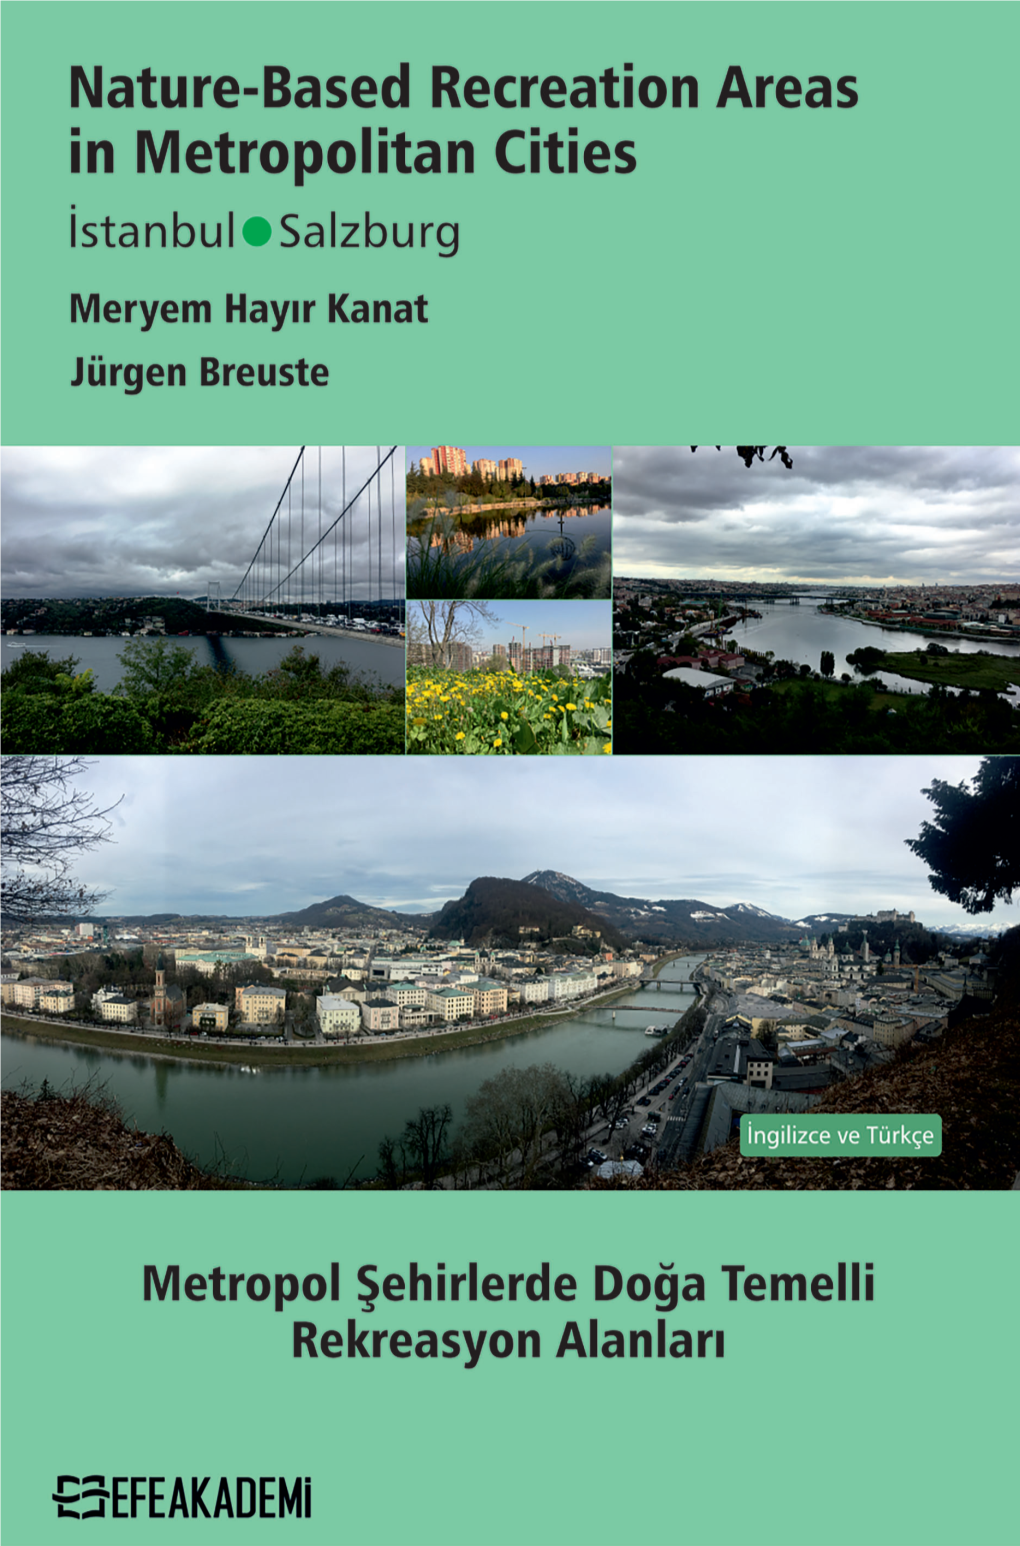 Nature- Based Recreation Areas in Metropolitan Cities Metropol Ġehġrlerde Doğa Temellġ Rekreasyon Alanlari